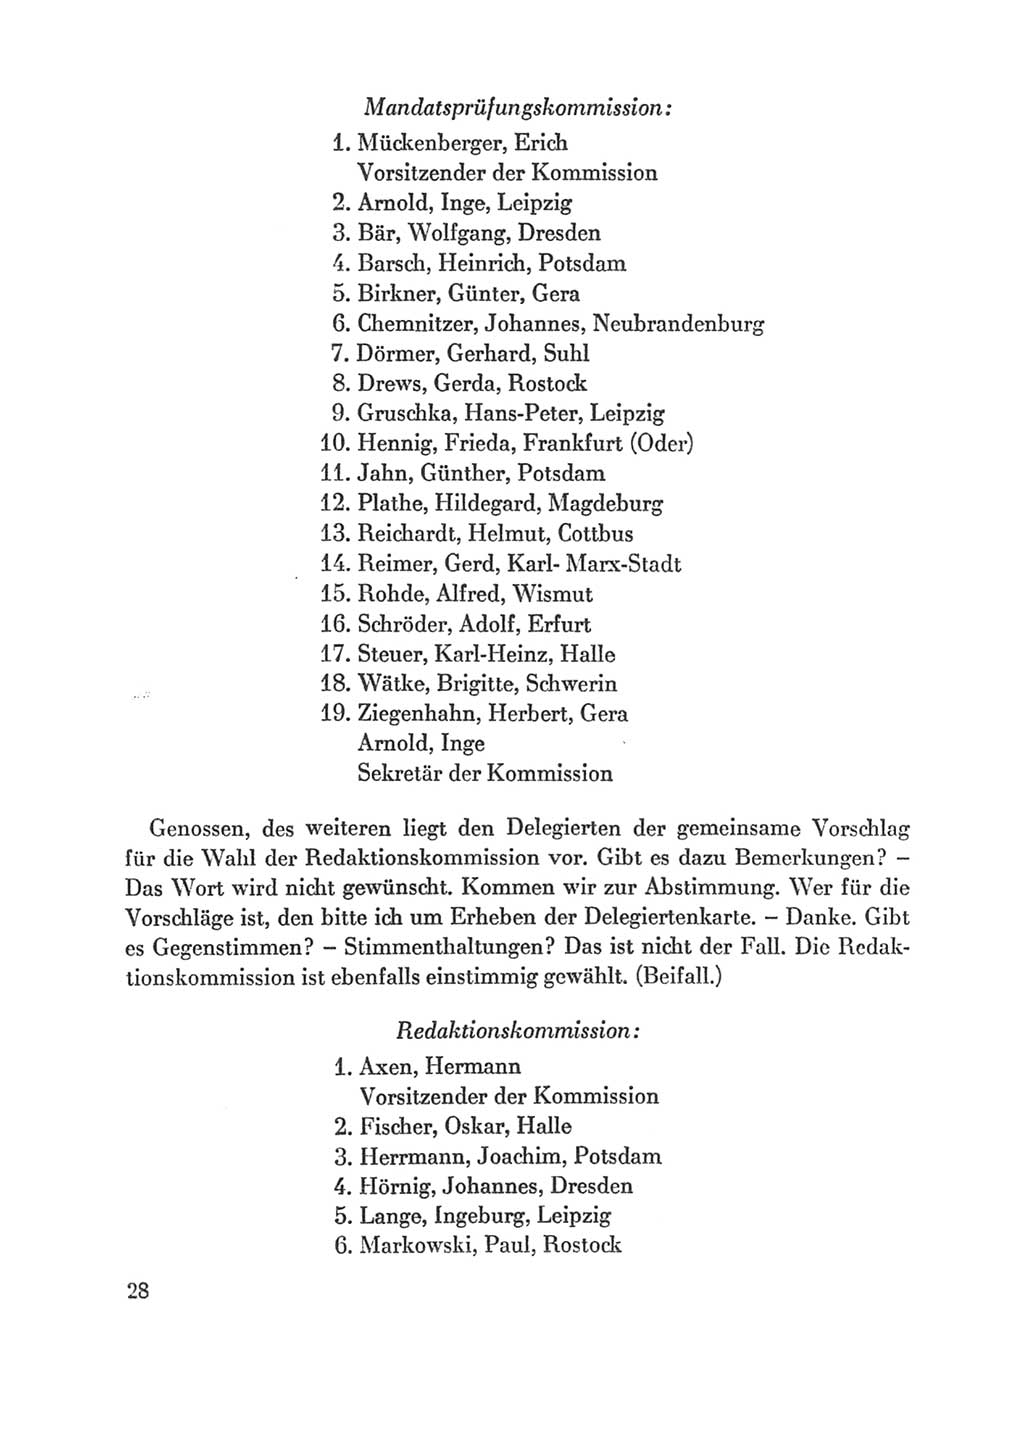 Protokoll der Verhandlungen des Ⅸ. Parteitages der Sozialistischen Einheitspartei Deutschlands (SED) [Deutsche Demokratische Republik (DDR)] 1976, Band 1, Seite 28 (Prot. Verh. Ⅸ. PT SED DDR 1976, Bd. 1, S. 28)